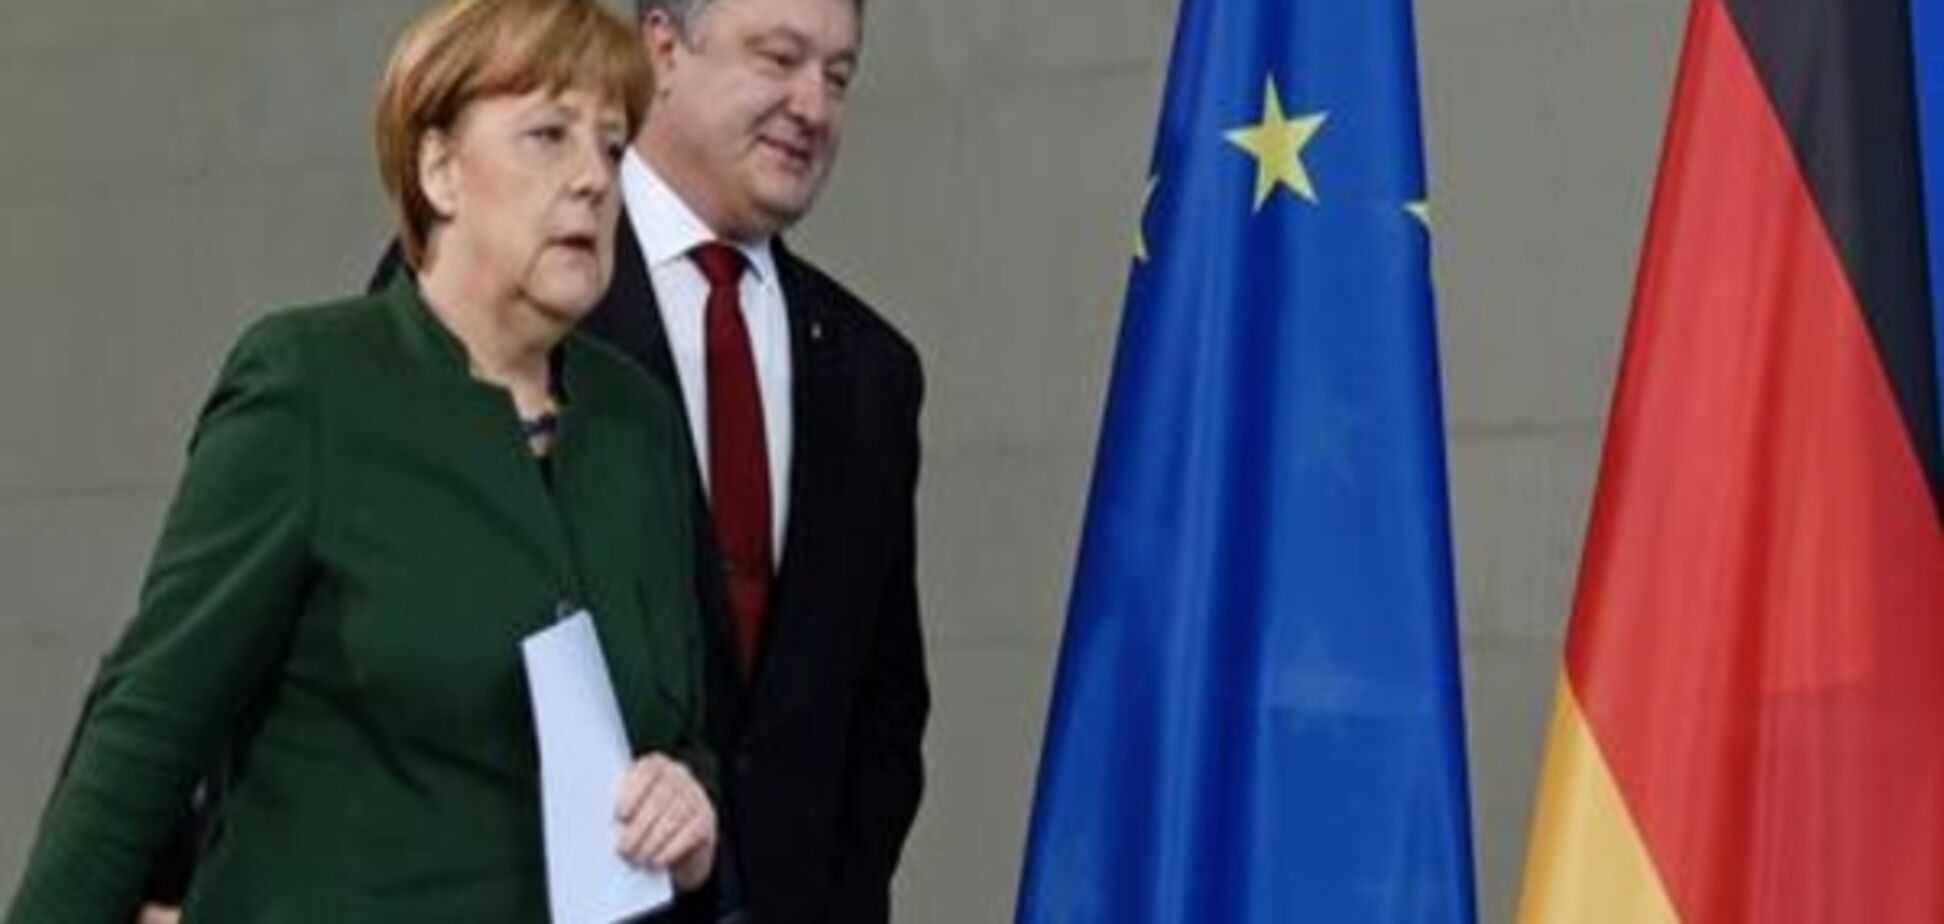 Меркель: Загострення ситуації на Донбасі викликає занепокоєння